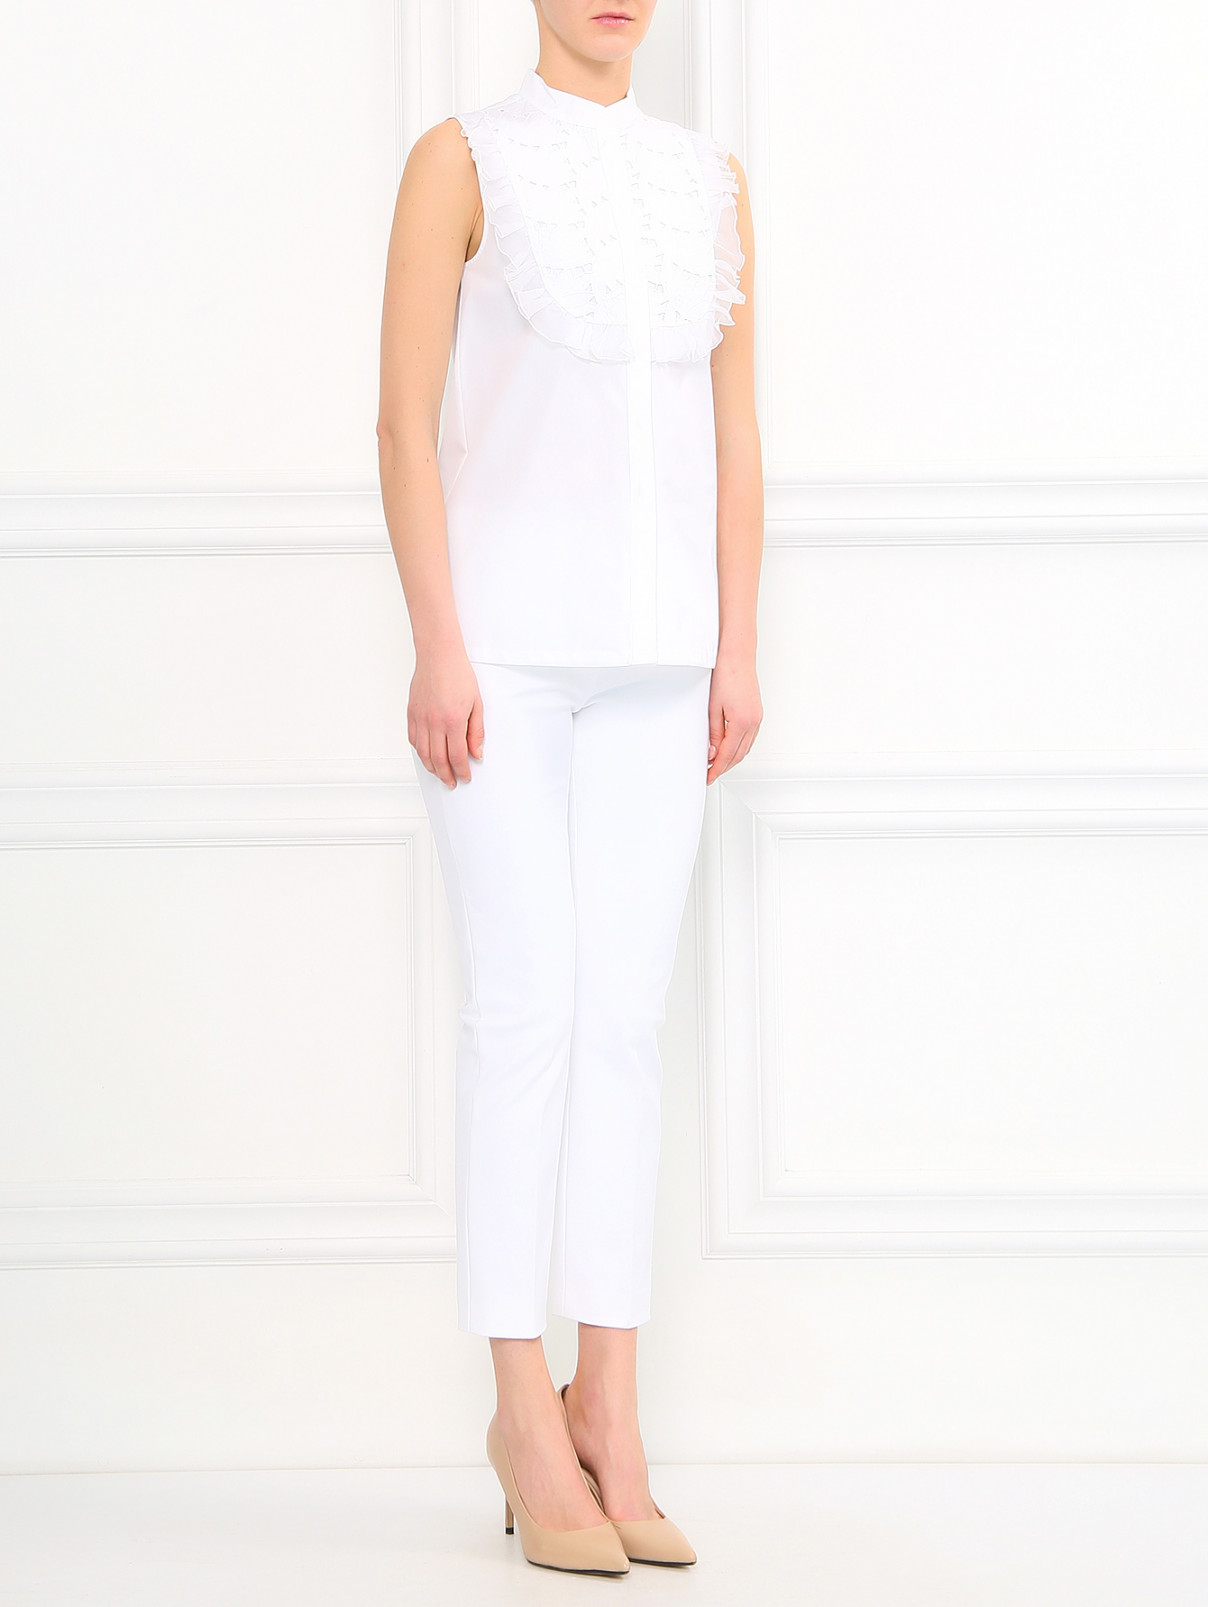 Блуза из хлопка с кружевной вставкой Pianoforte  –  Модель Общий вид  – Цвет:  Белый